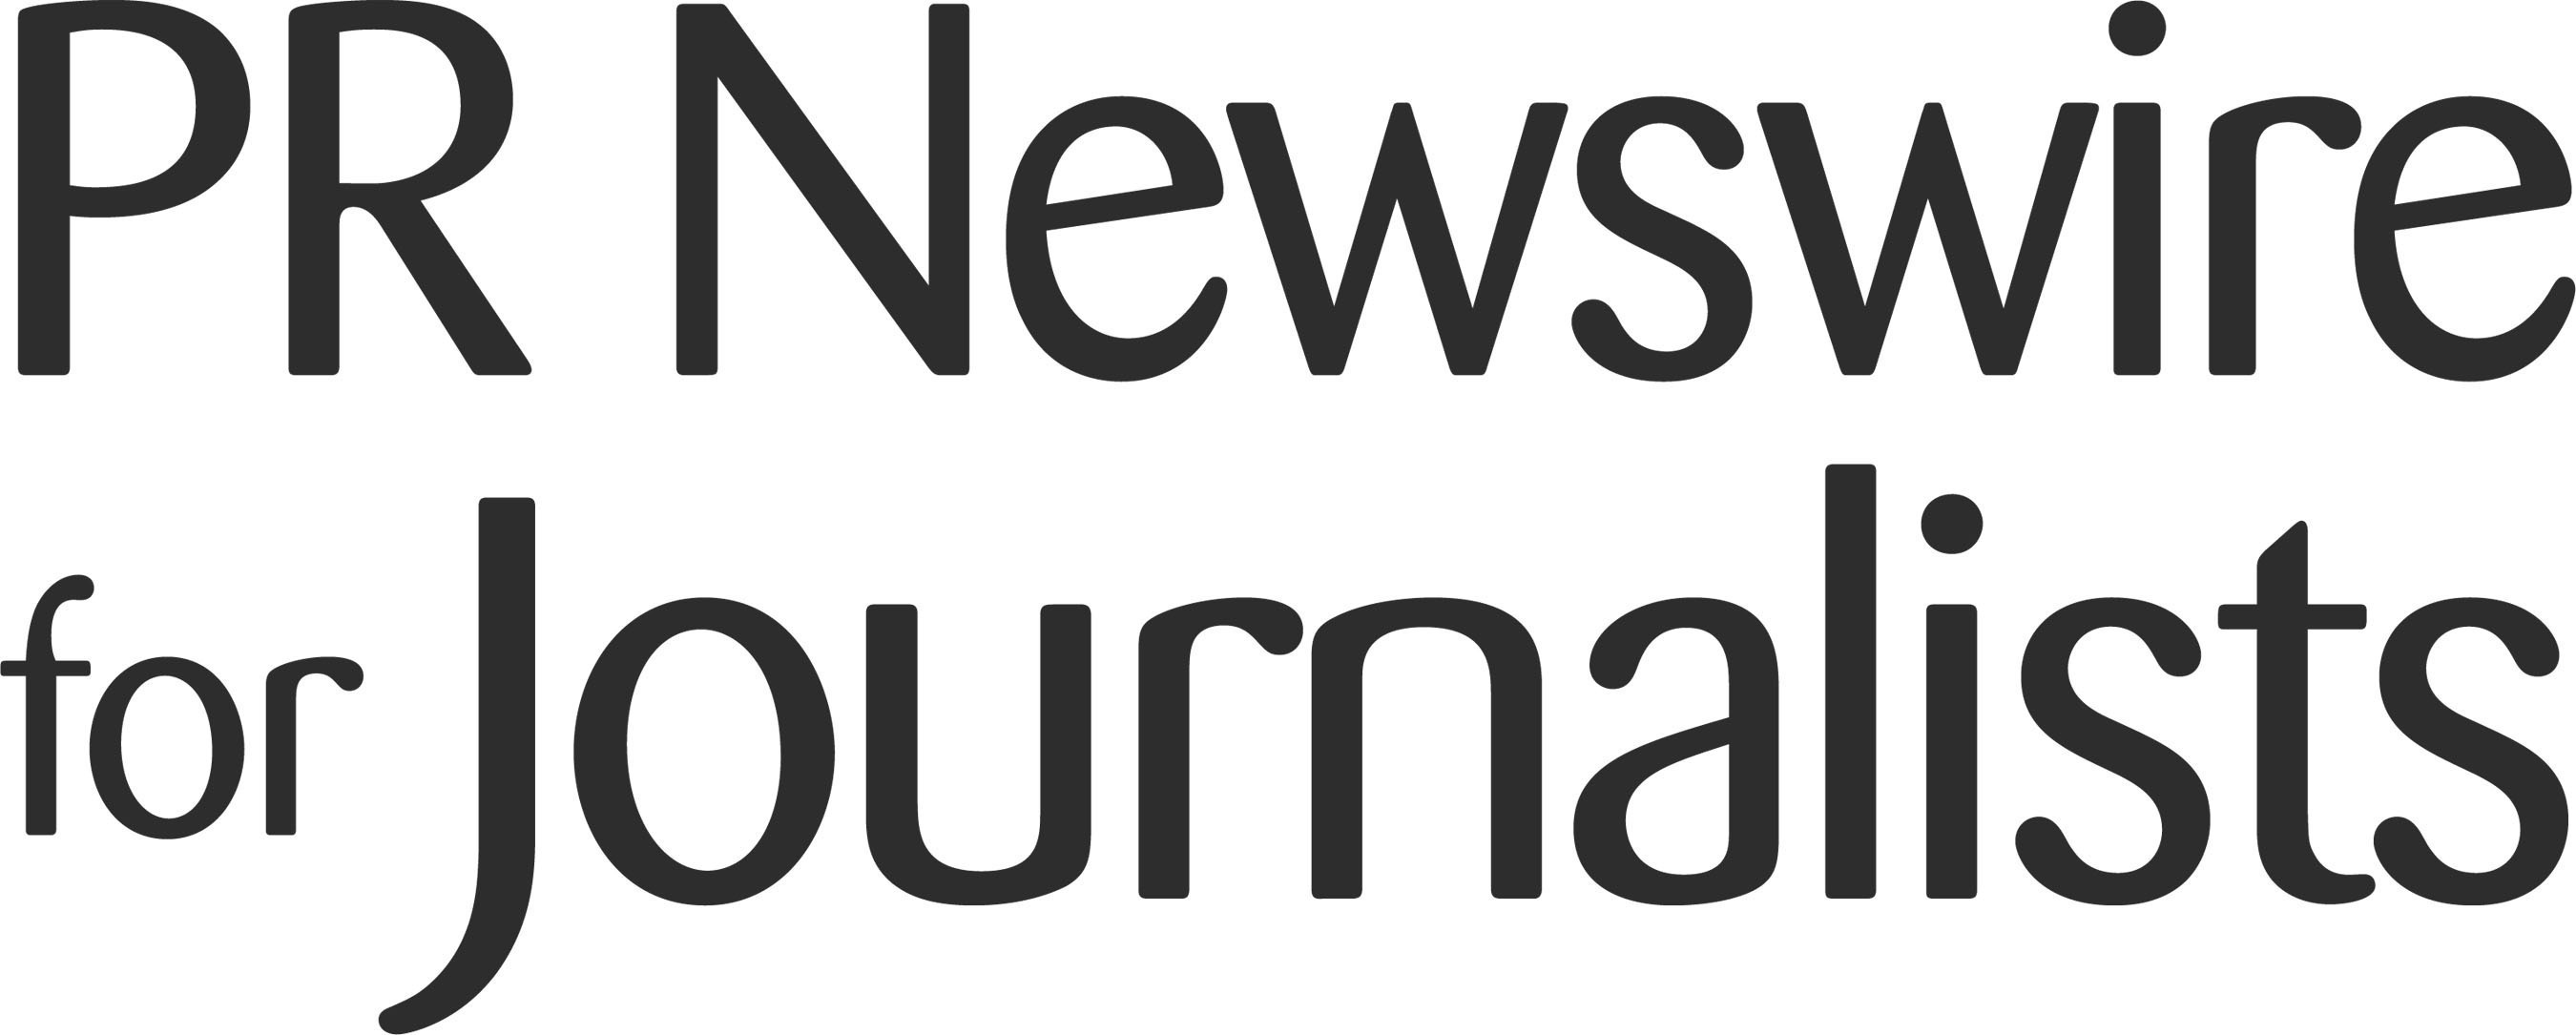 PR Newswire for Journalists. (PRNewsFoto/PR Newswire Association LLC) (PRNewsFoto/PR NEWSWIRE ASSOCIATION LLC)